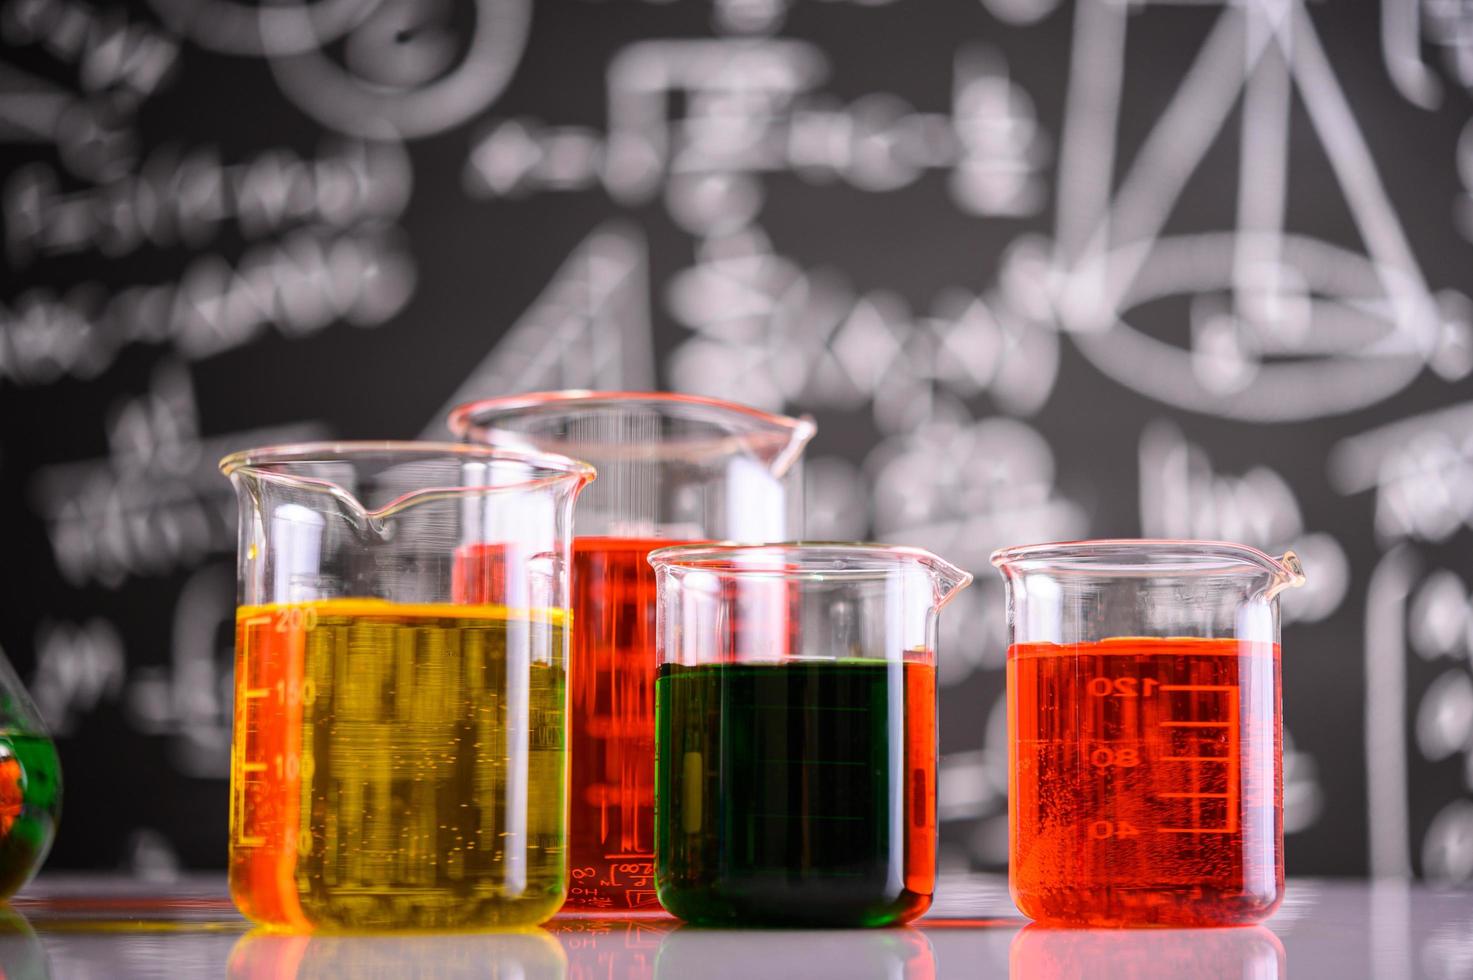 laboratorieglasvaror med olika kemiska färger foto